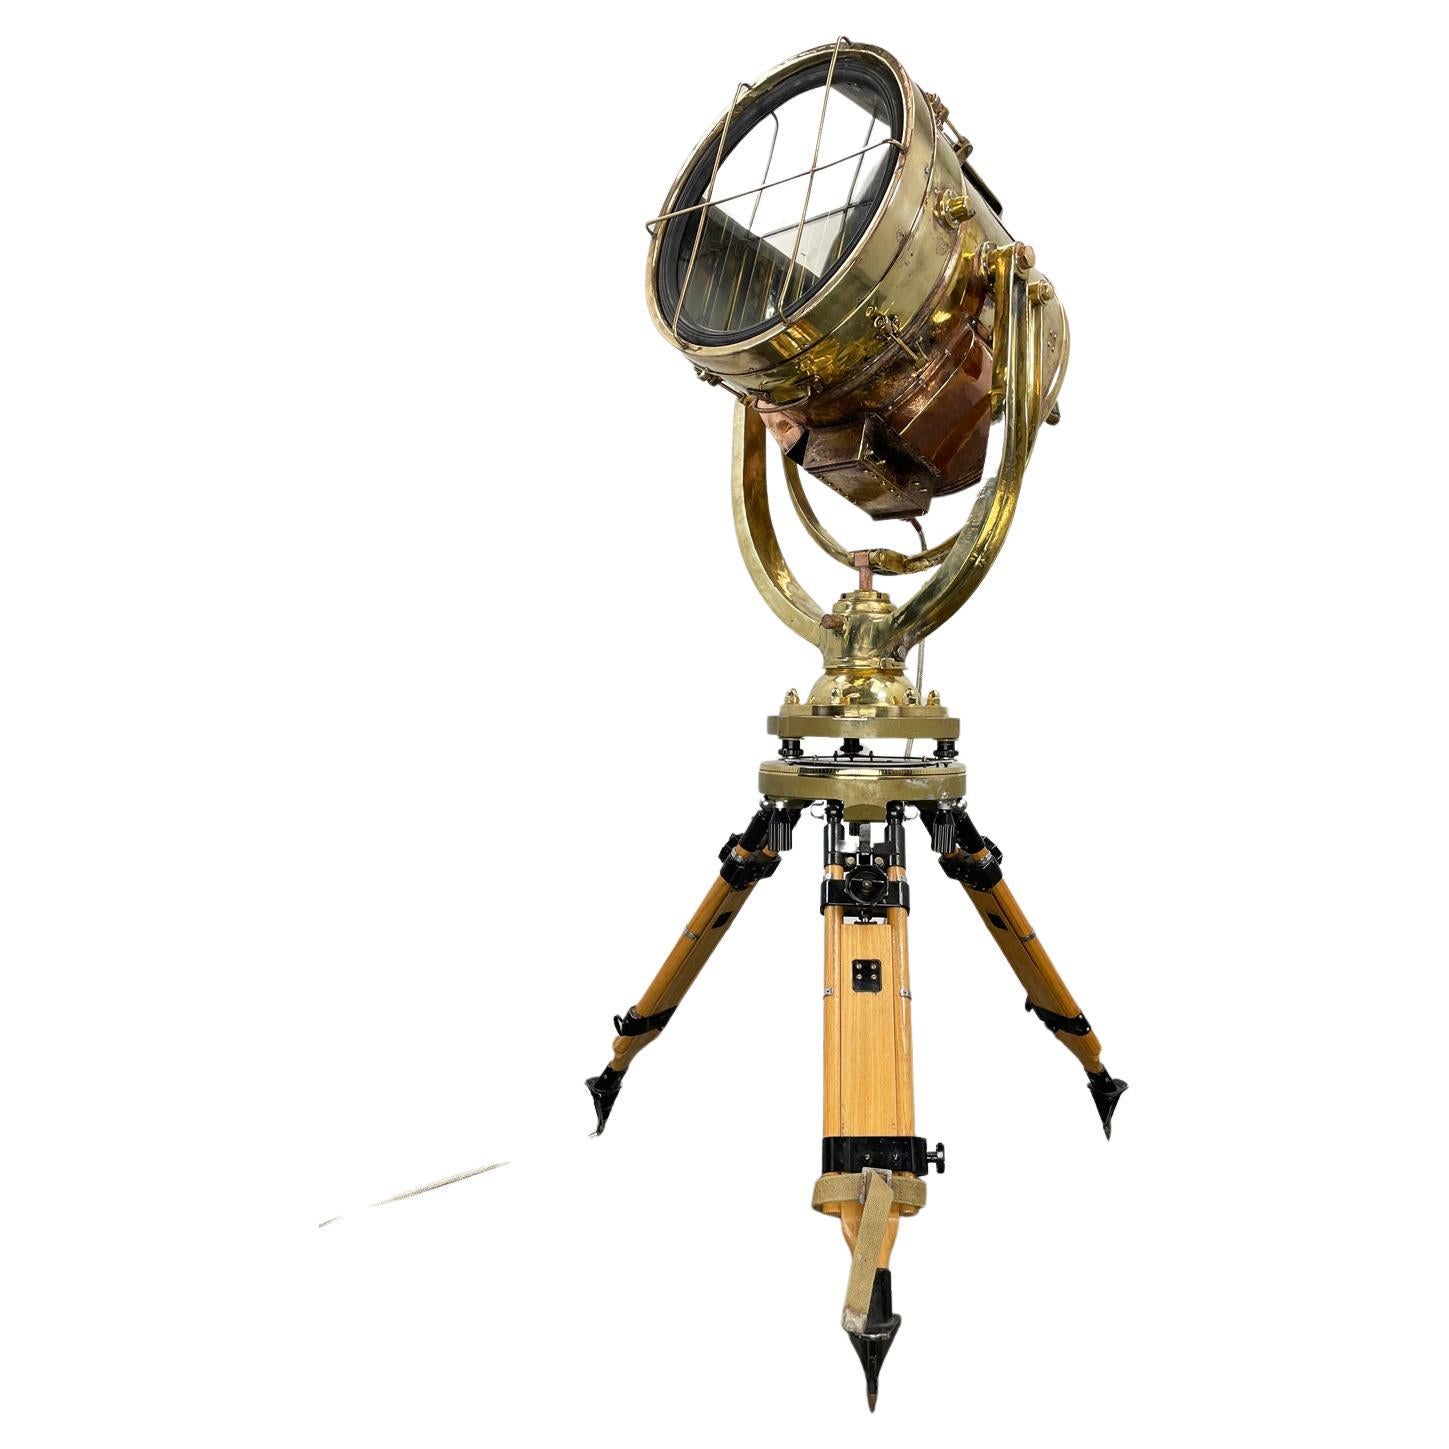 Il s'agit d'une lampe de signalisation de jour Shonan Kosakusho fabriquée en 1980, mariée avec un trépied militaire à gyroscope. 

Récupérés sur des navires de guerre du milieu du siècle, Shonan en a fabriqué pendant la Seconde Guerre mondiale,